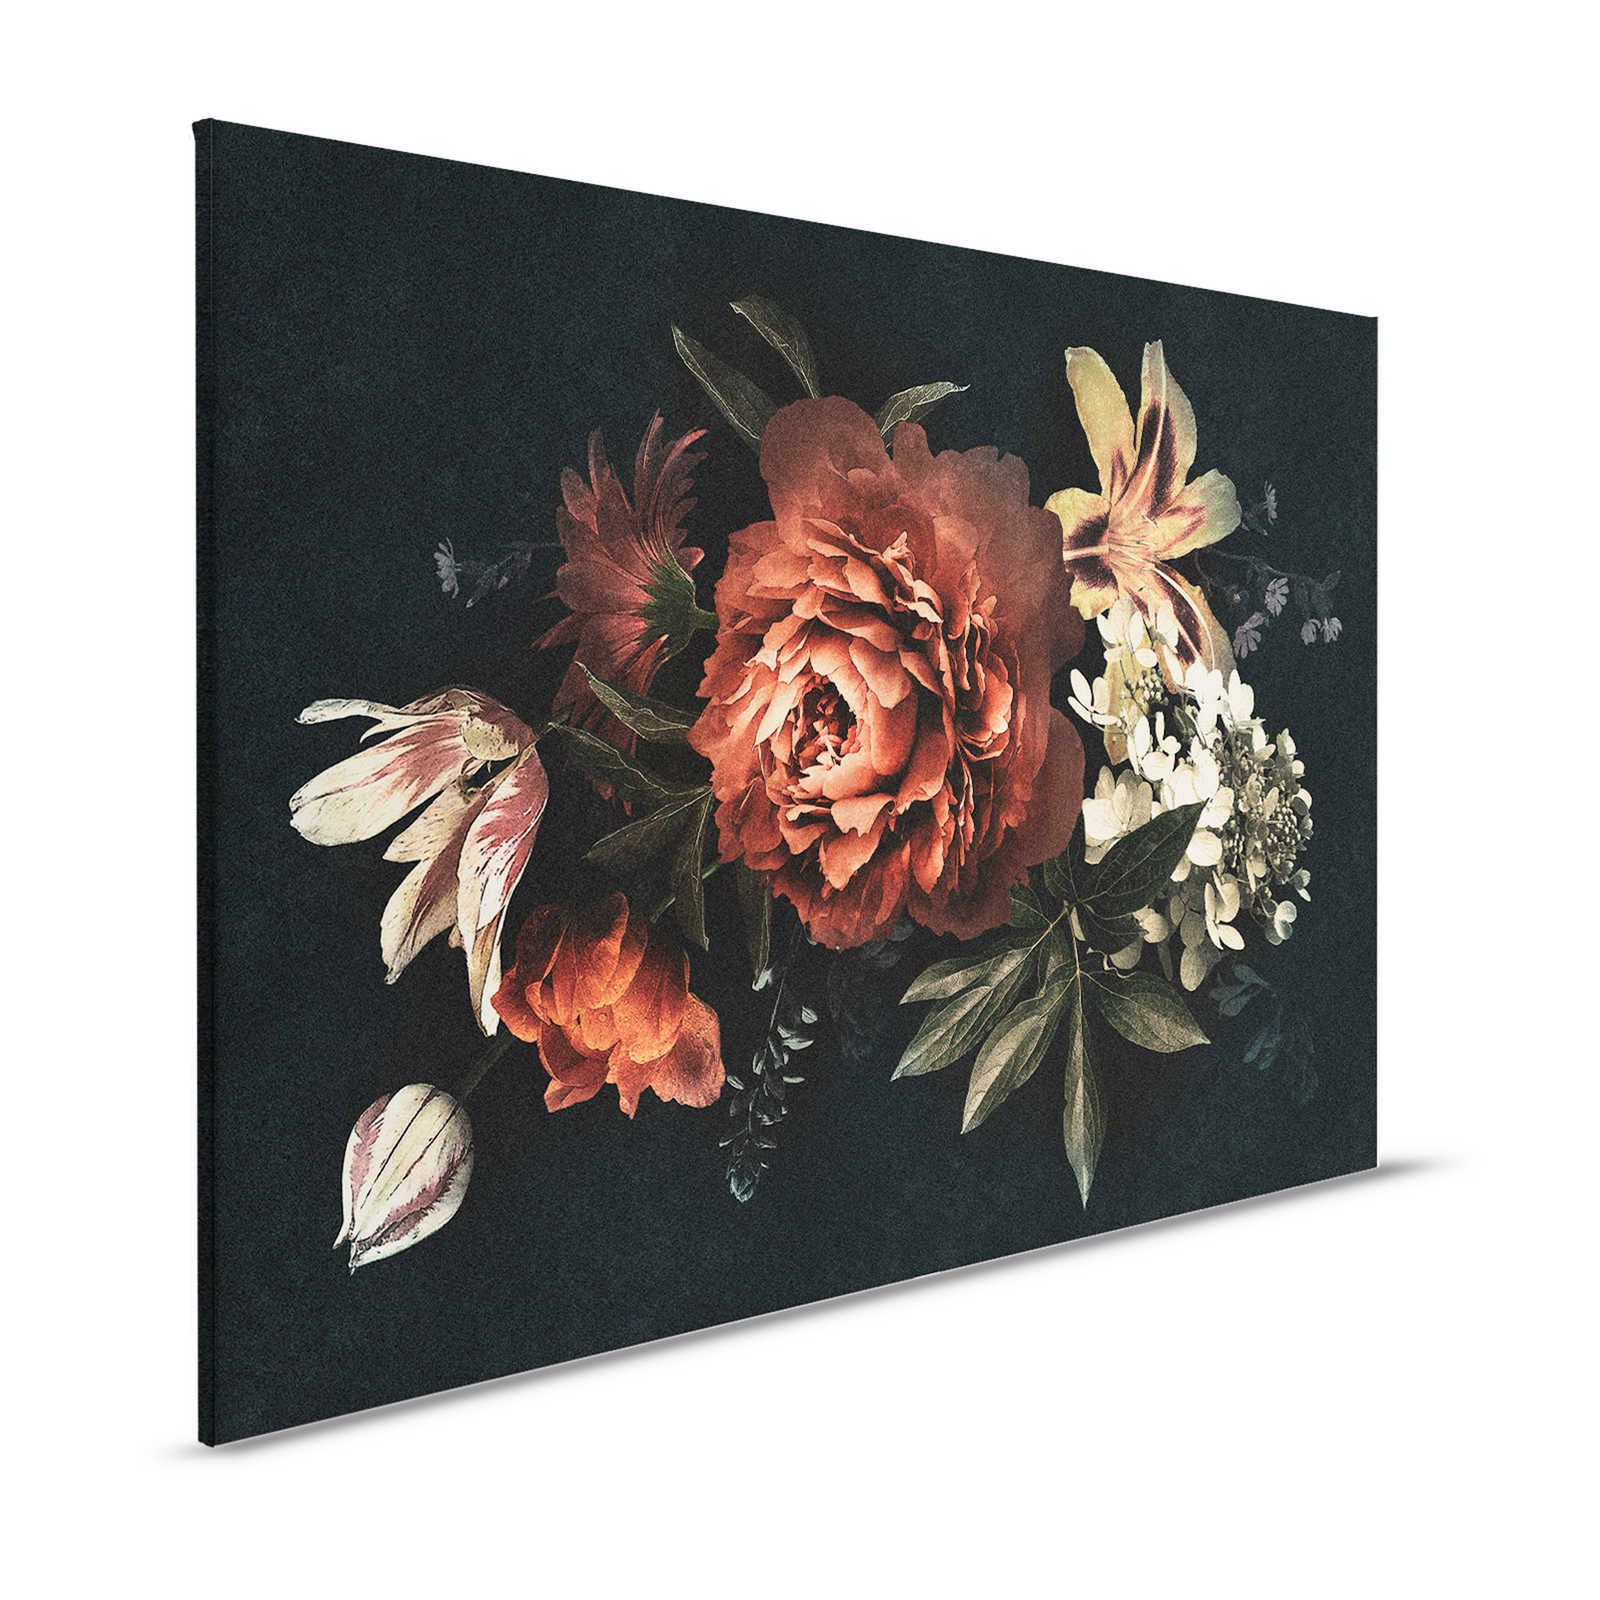 Drama queen 1 - Cuadro sobre lienzo Ramo de flores con fondo oscuro - 1,20 m x 0,80 m
